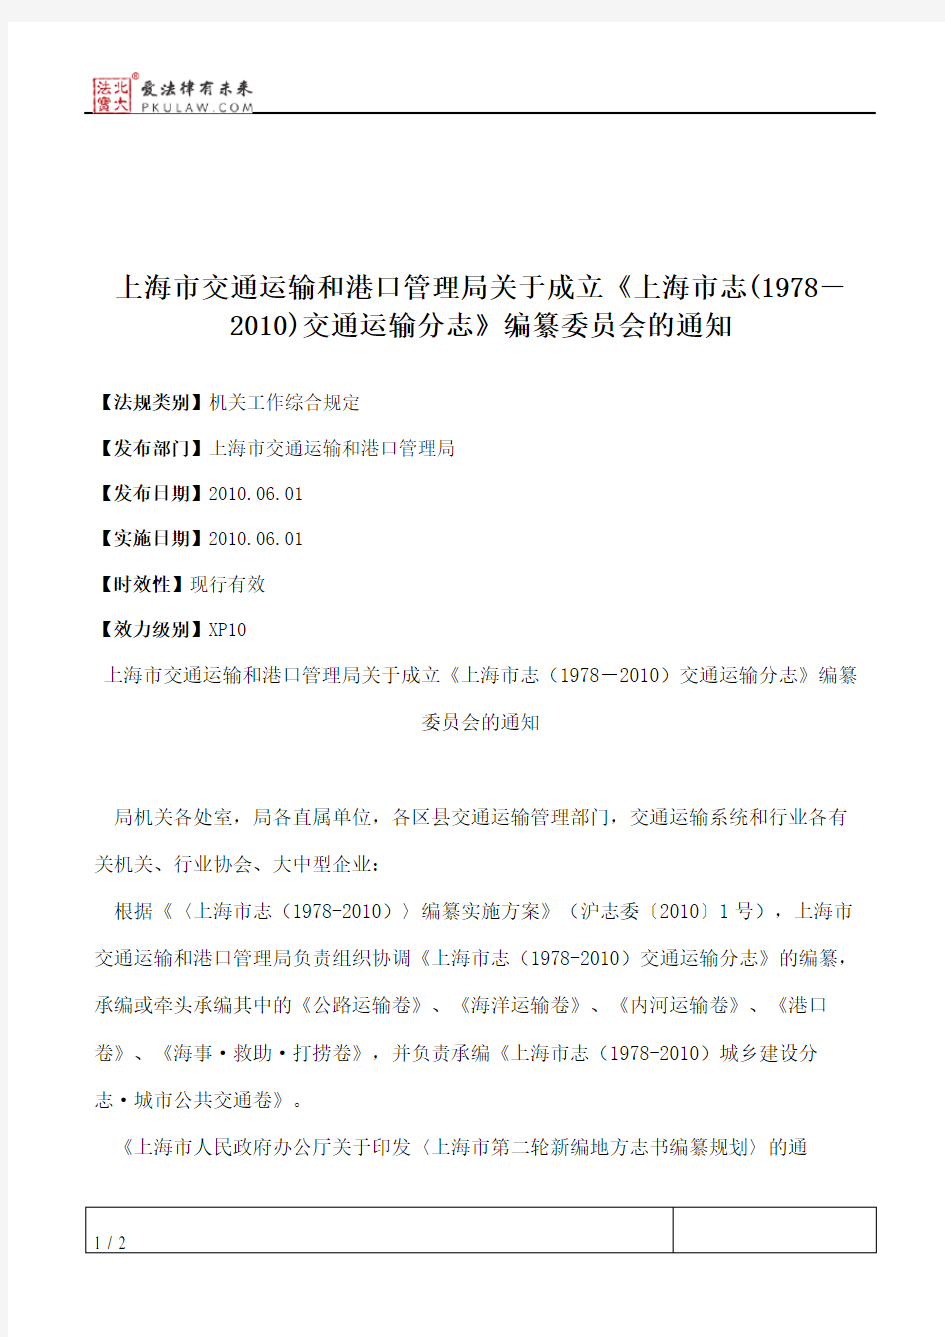 上海市交通运输和港口管理局关于成立《上海市志(1978-2010)交通运